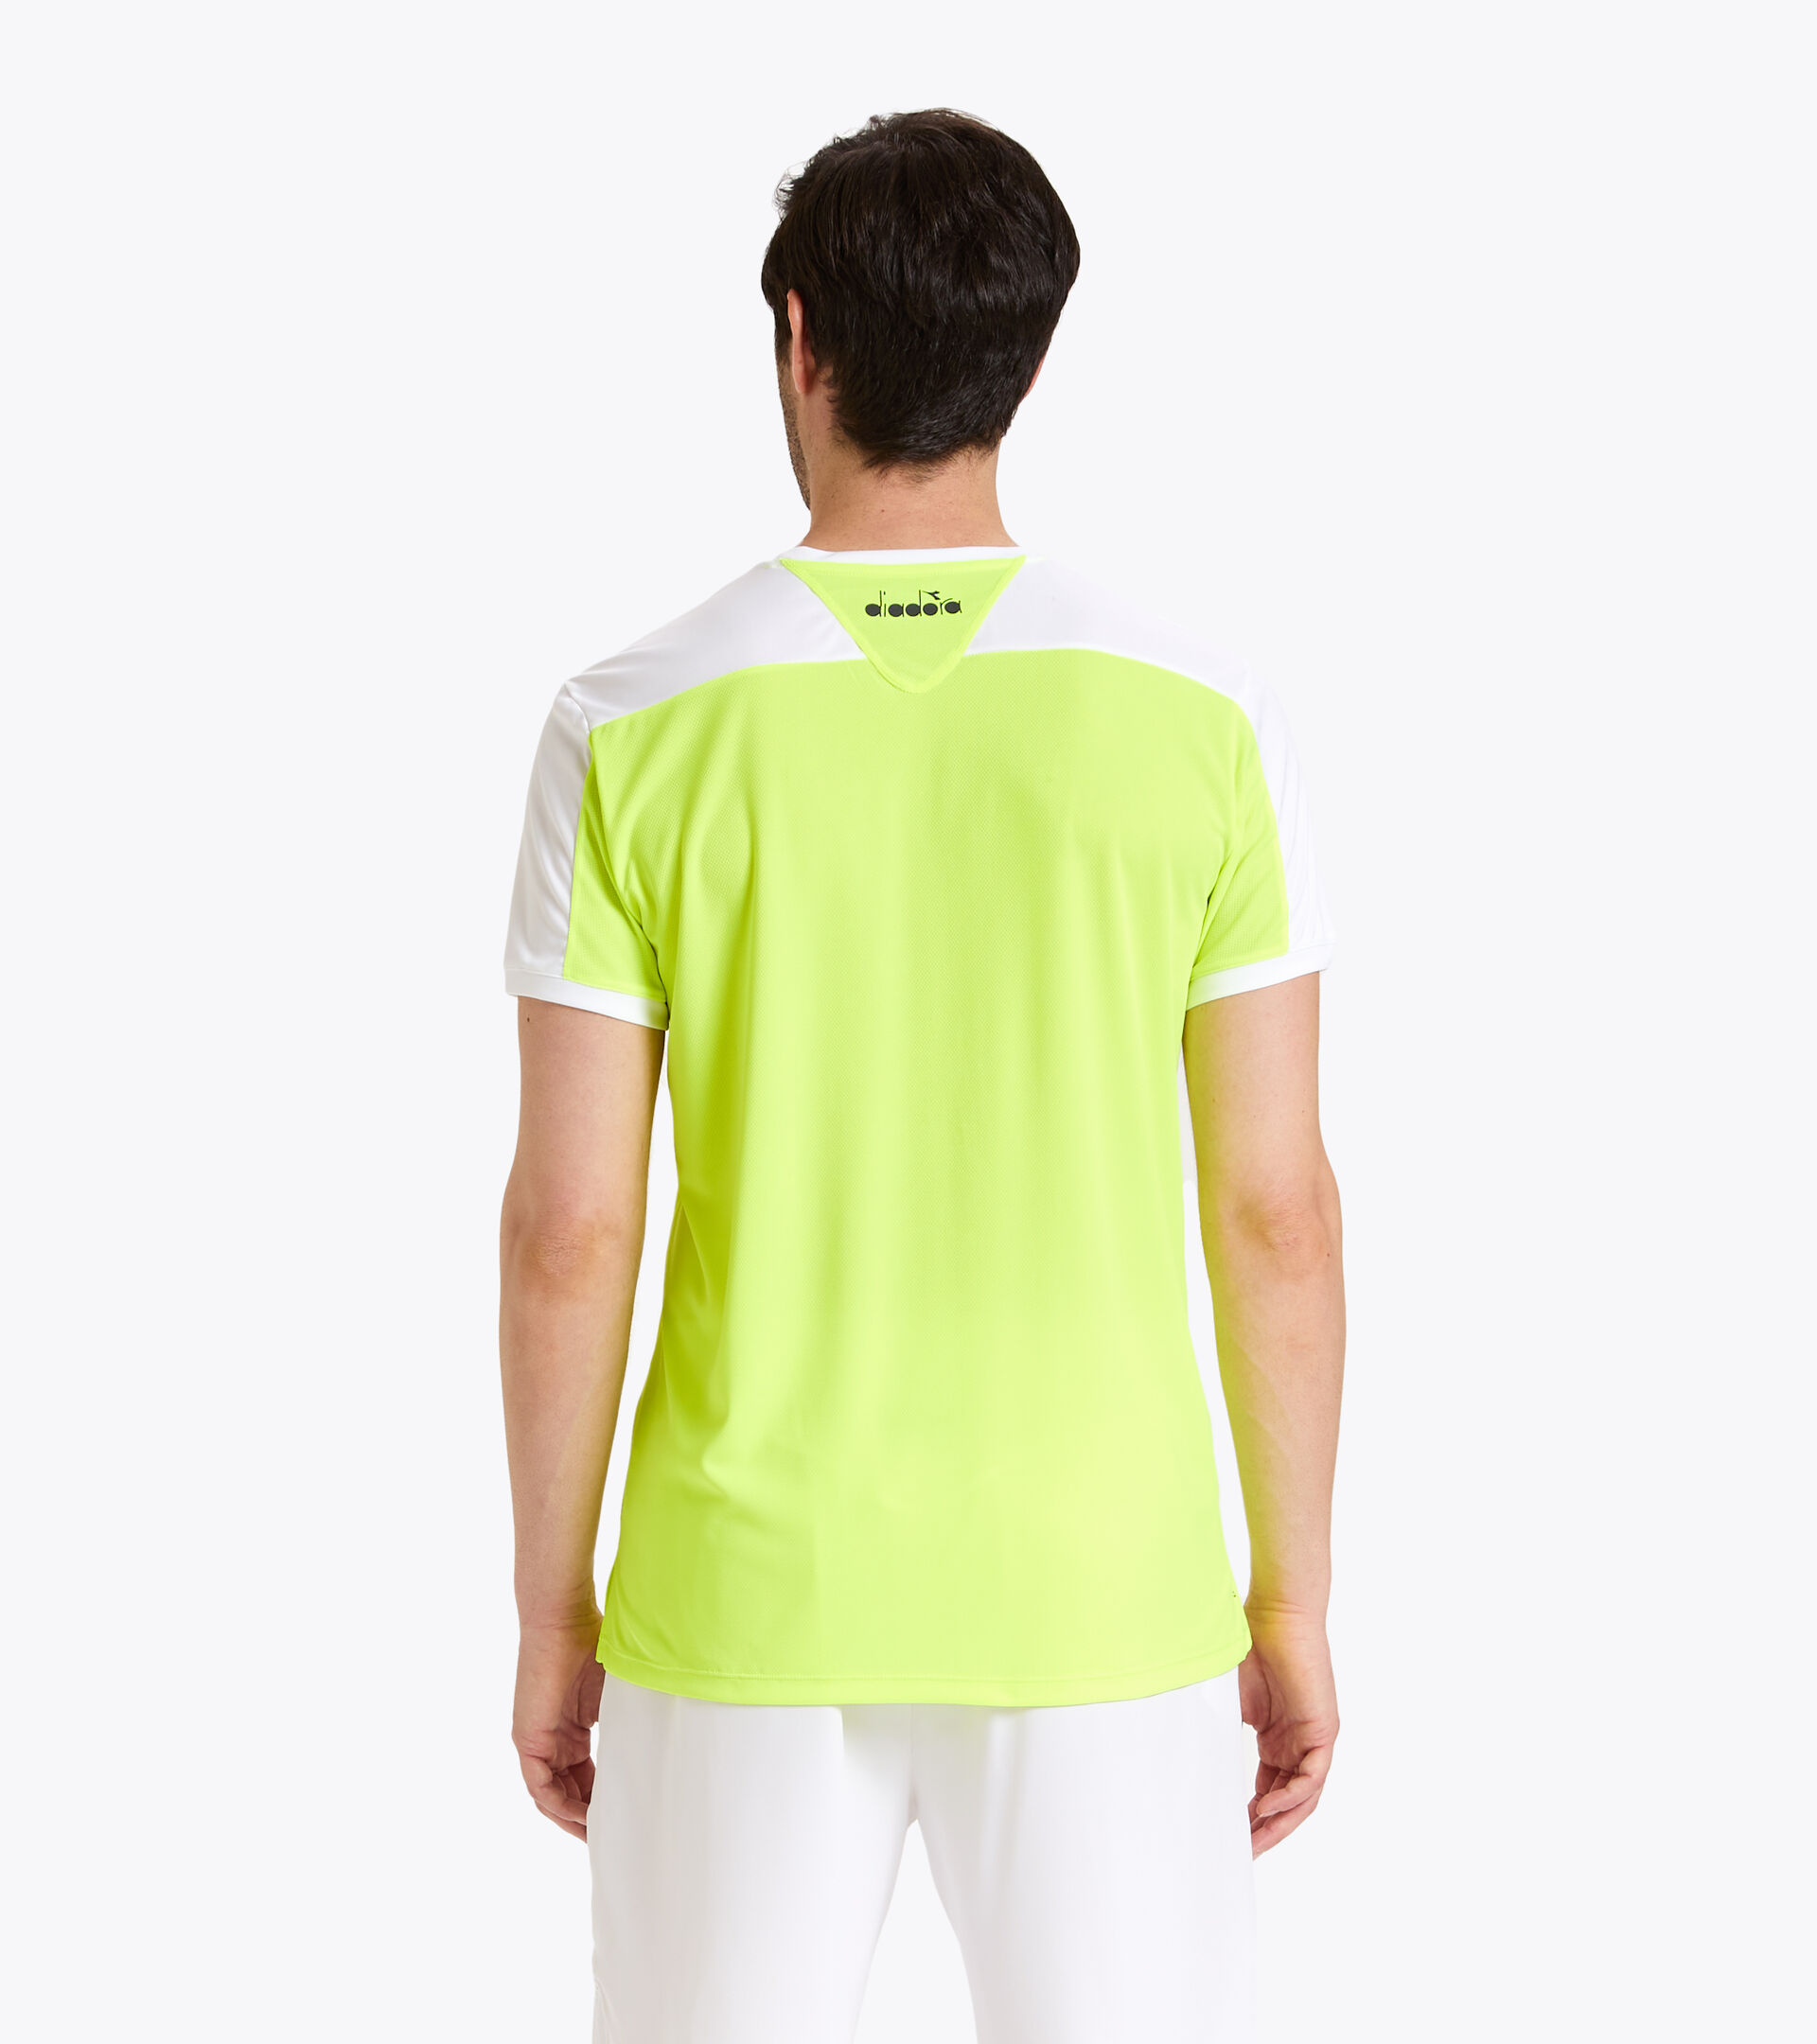 Tennis T-shirt - Men T-SHIRT COURT FLUO YELLOW DD - Diadora